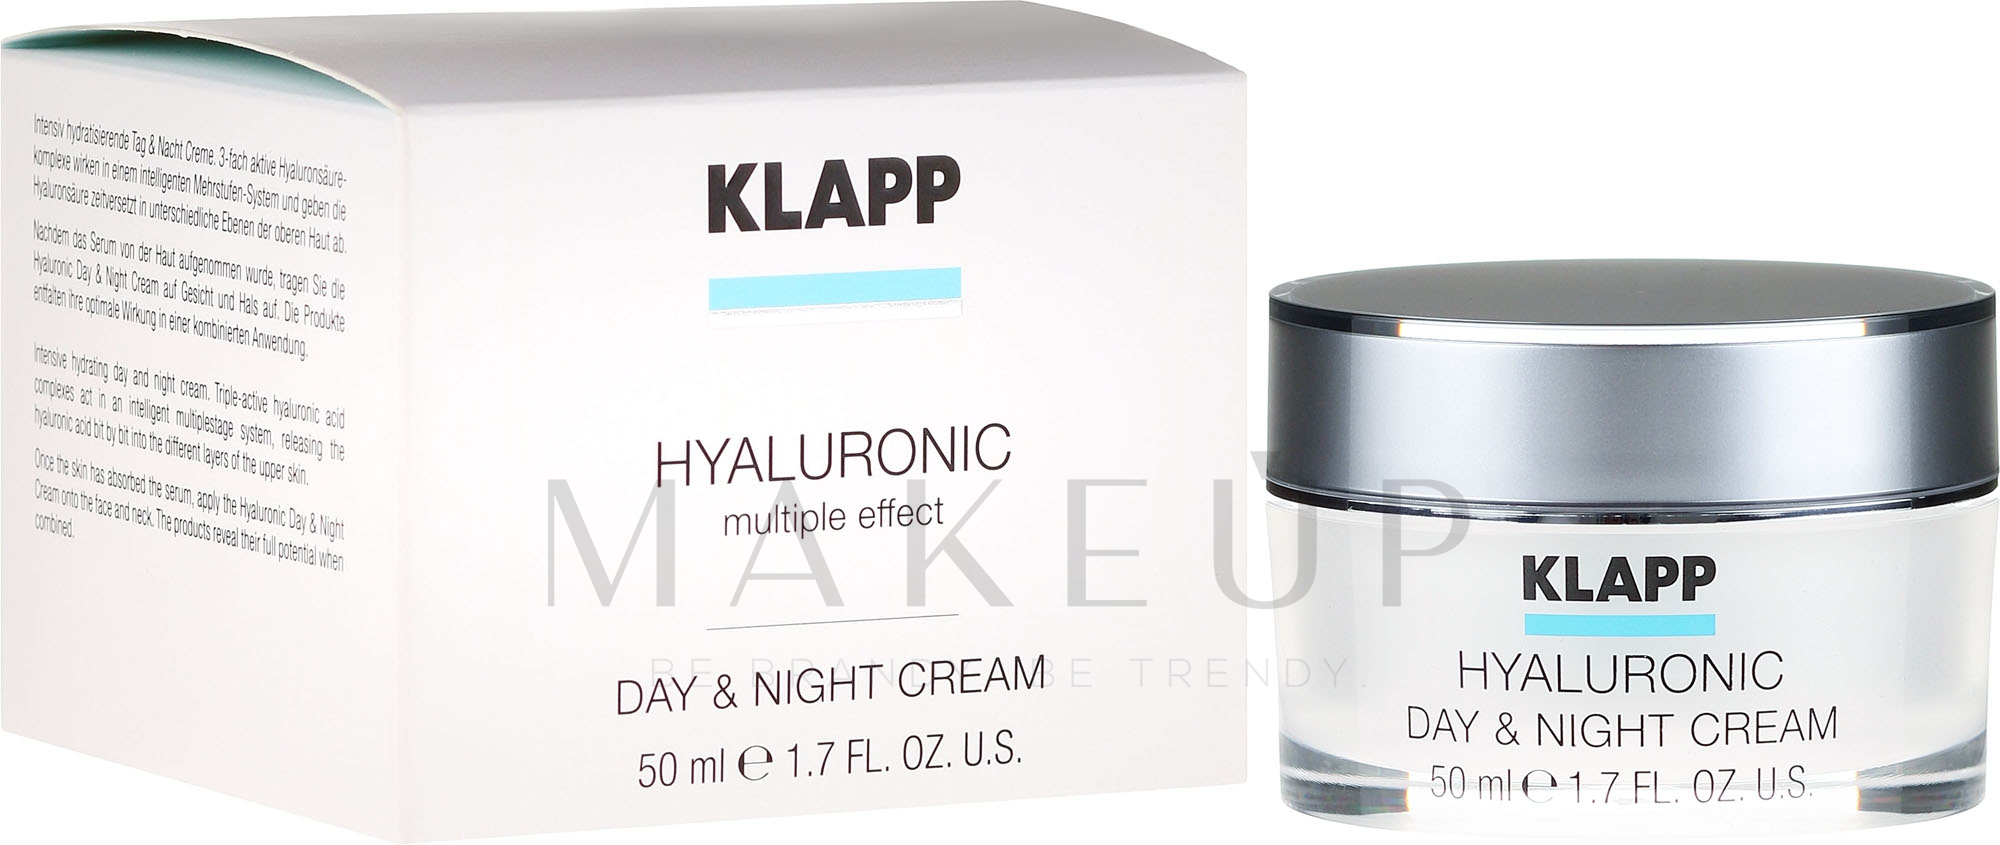 Intensiv hydratisierende Gesichtscreme für Tag und Nacht mit Hyaluronsäure - Klapp Hyaluronic Day & Night Cream — Bild 50 ml